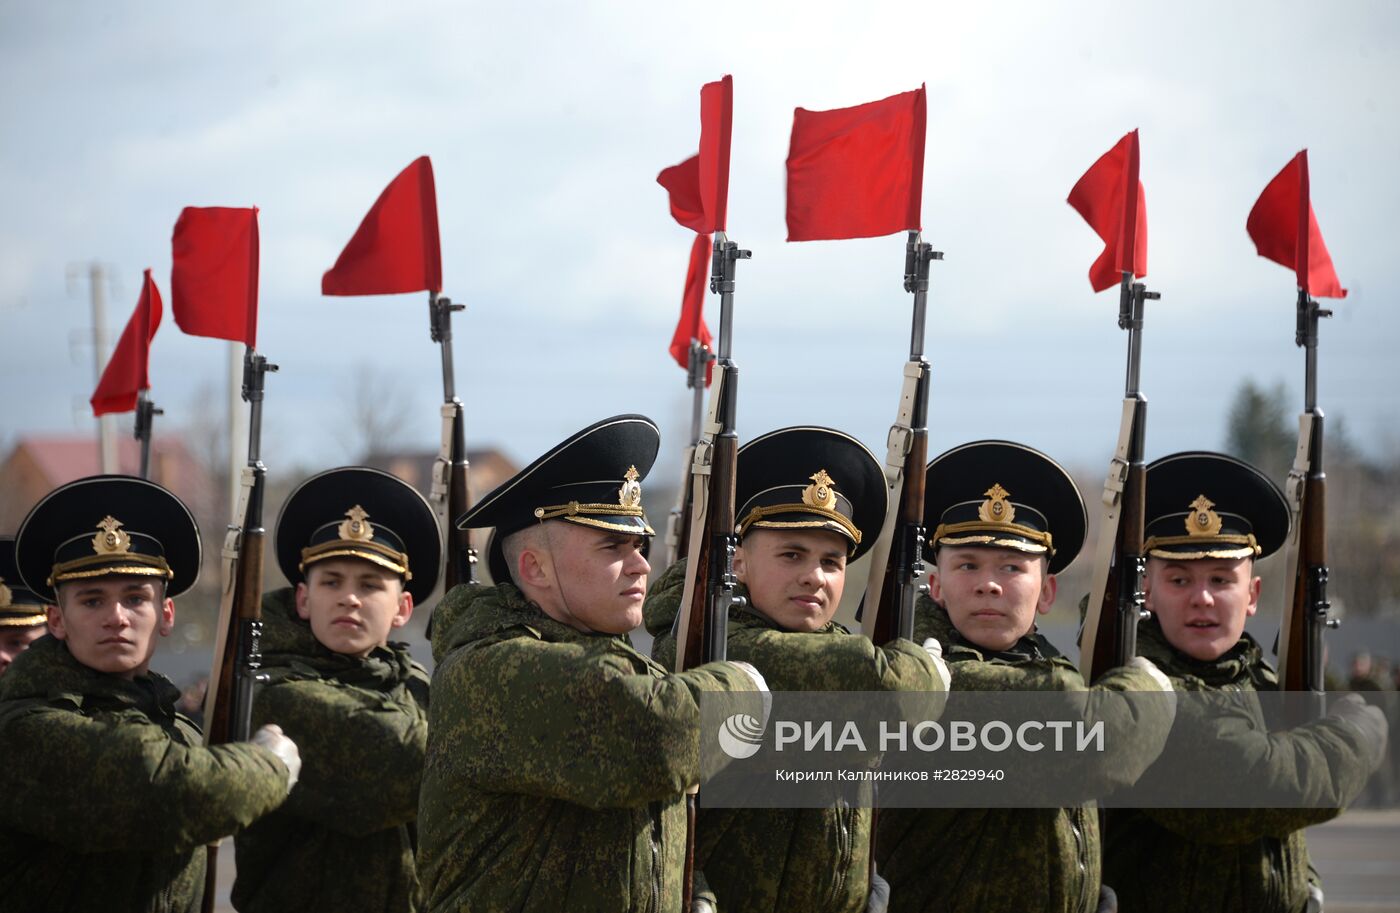 Военно-патриотическая акция "Под знаменем Победы"